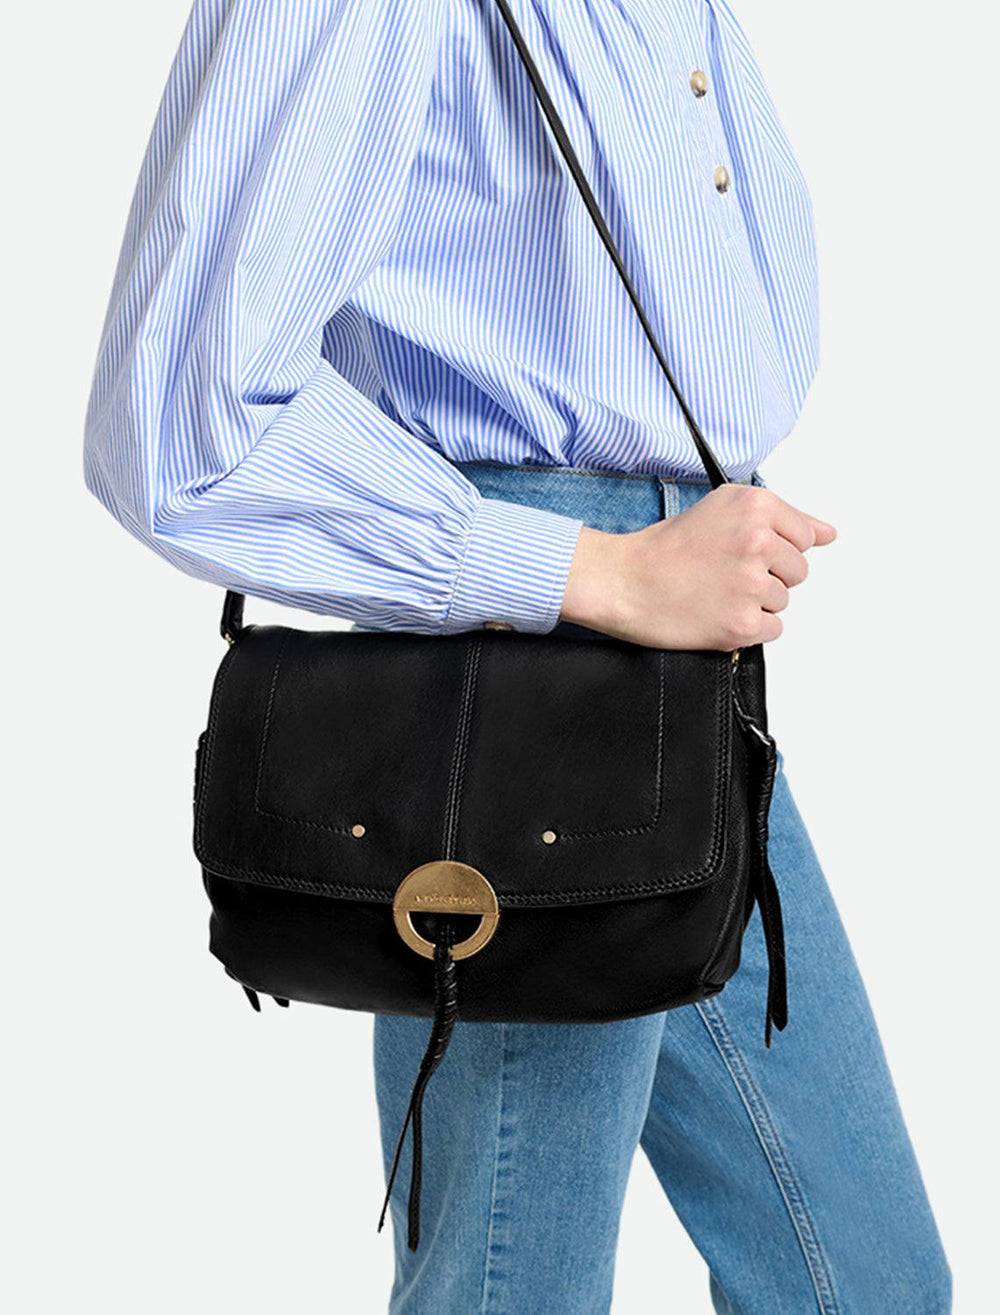 Model holding Vanessa Bruno's crossbody gm handbag in noir.